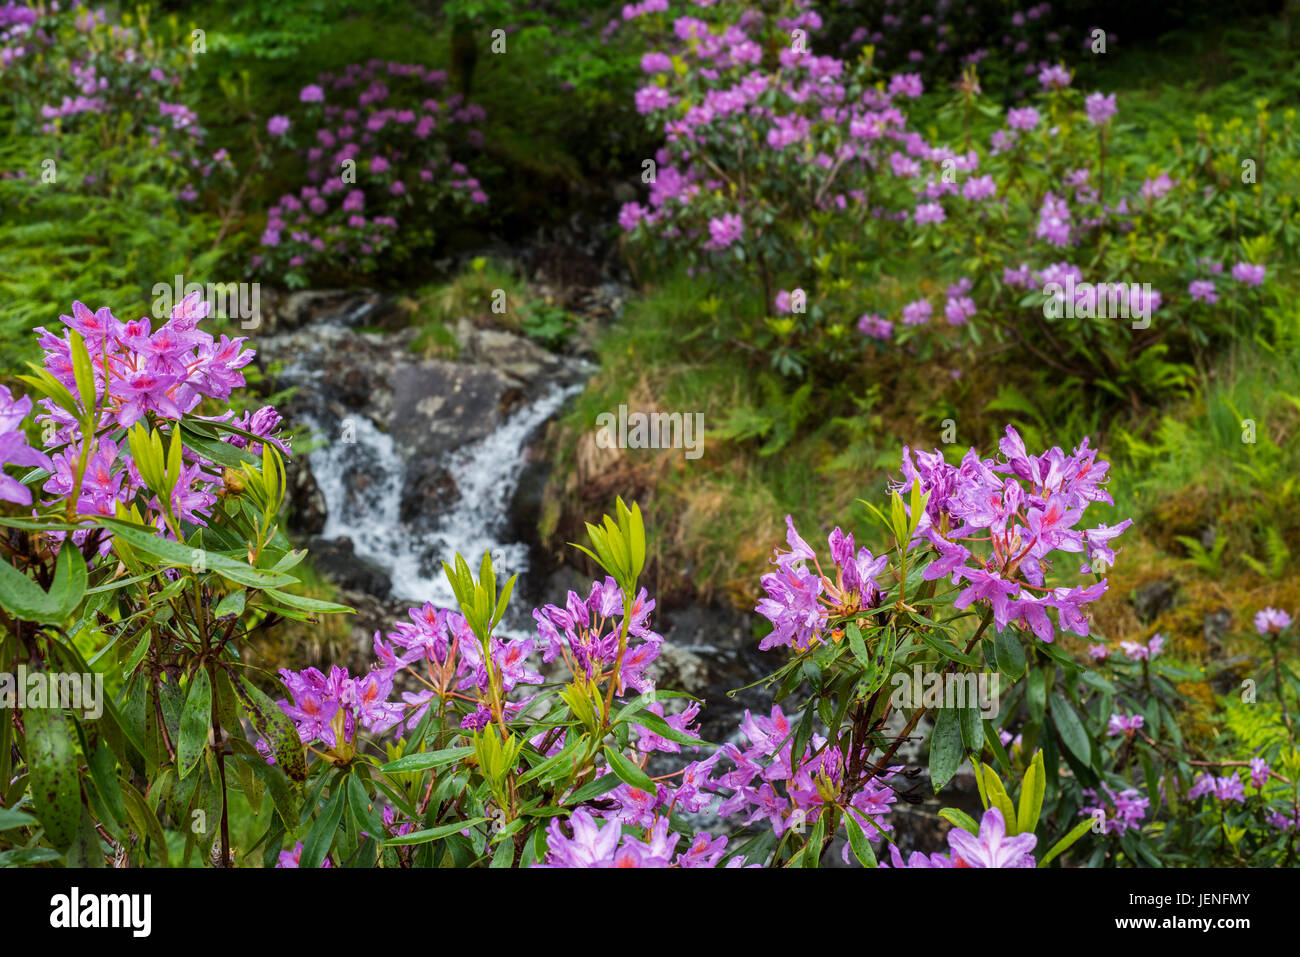 Comuni / rododendro rododendro del Mar Nero (Rhododendron ponticum) in fiore lungo il torrente, specie invasive nelle Highlands scozzesi, Scozia Foto Stock